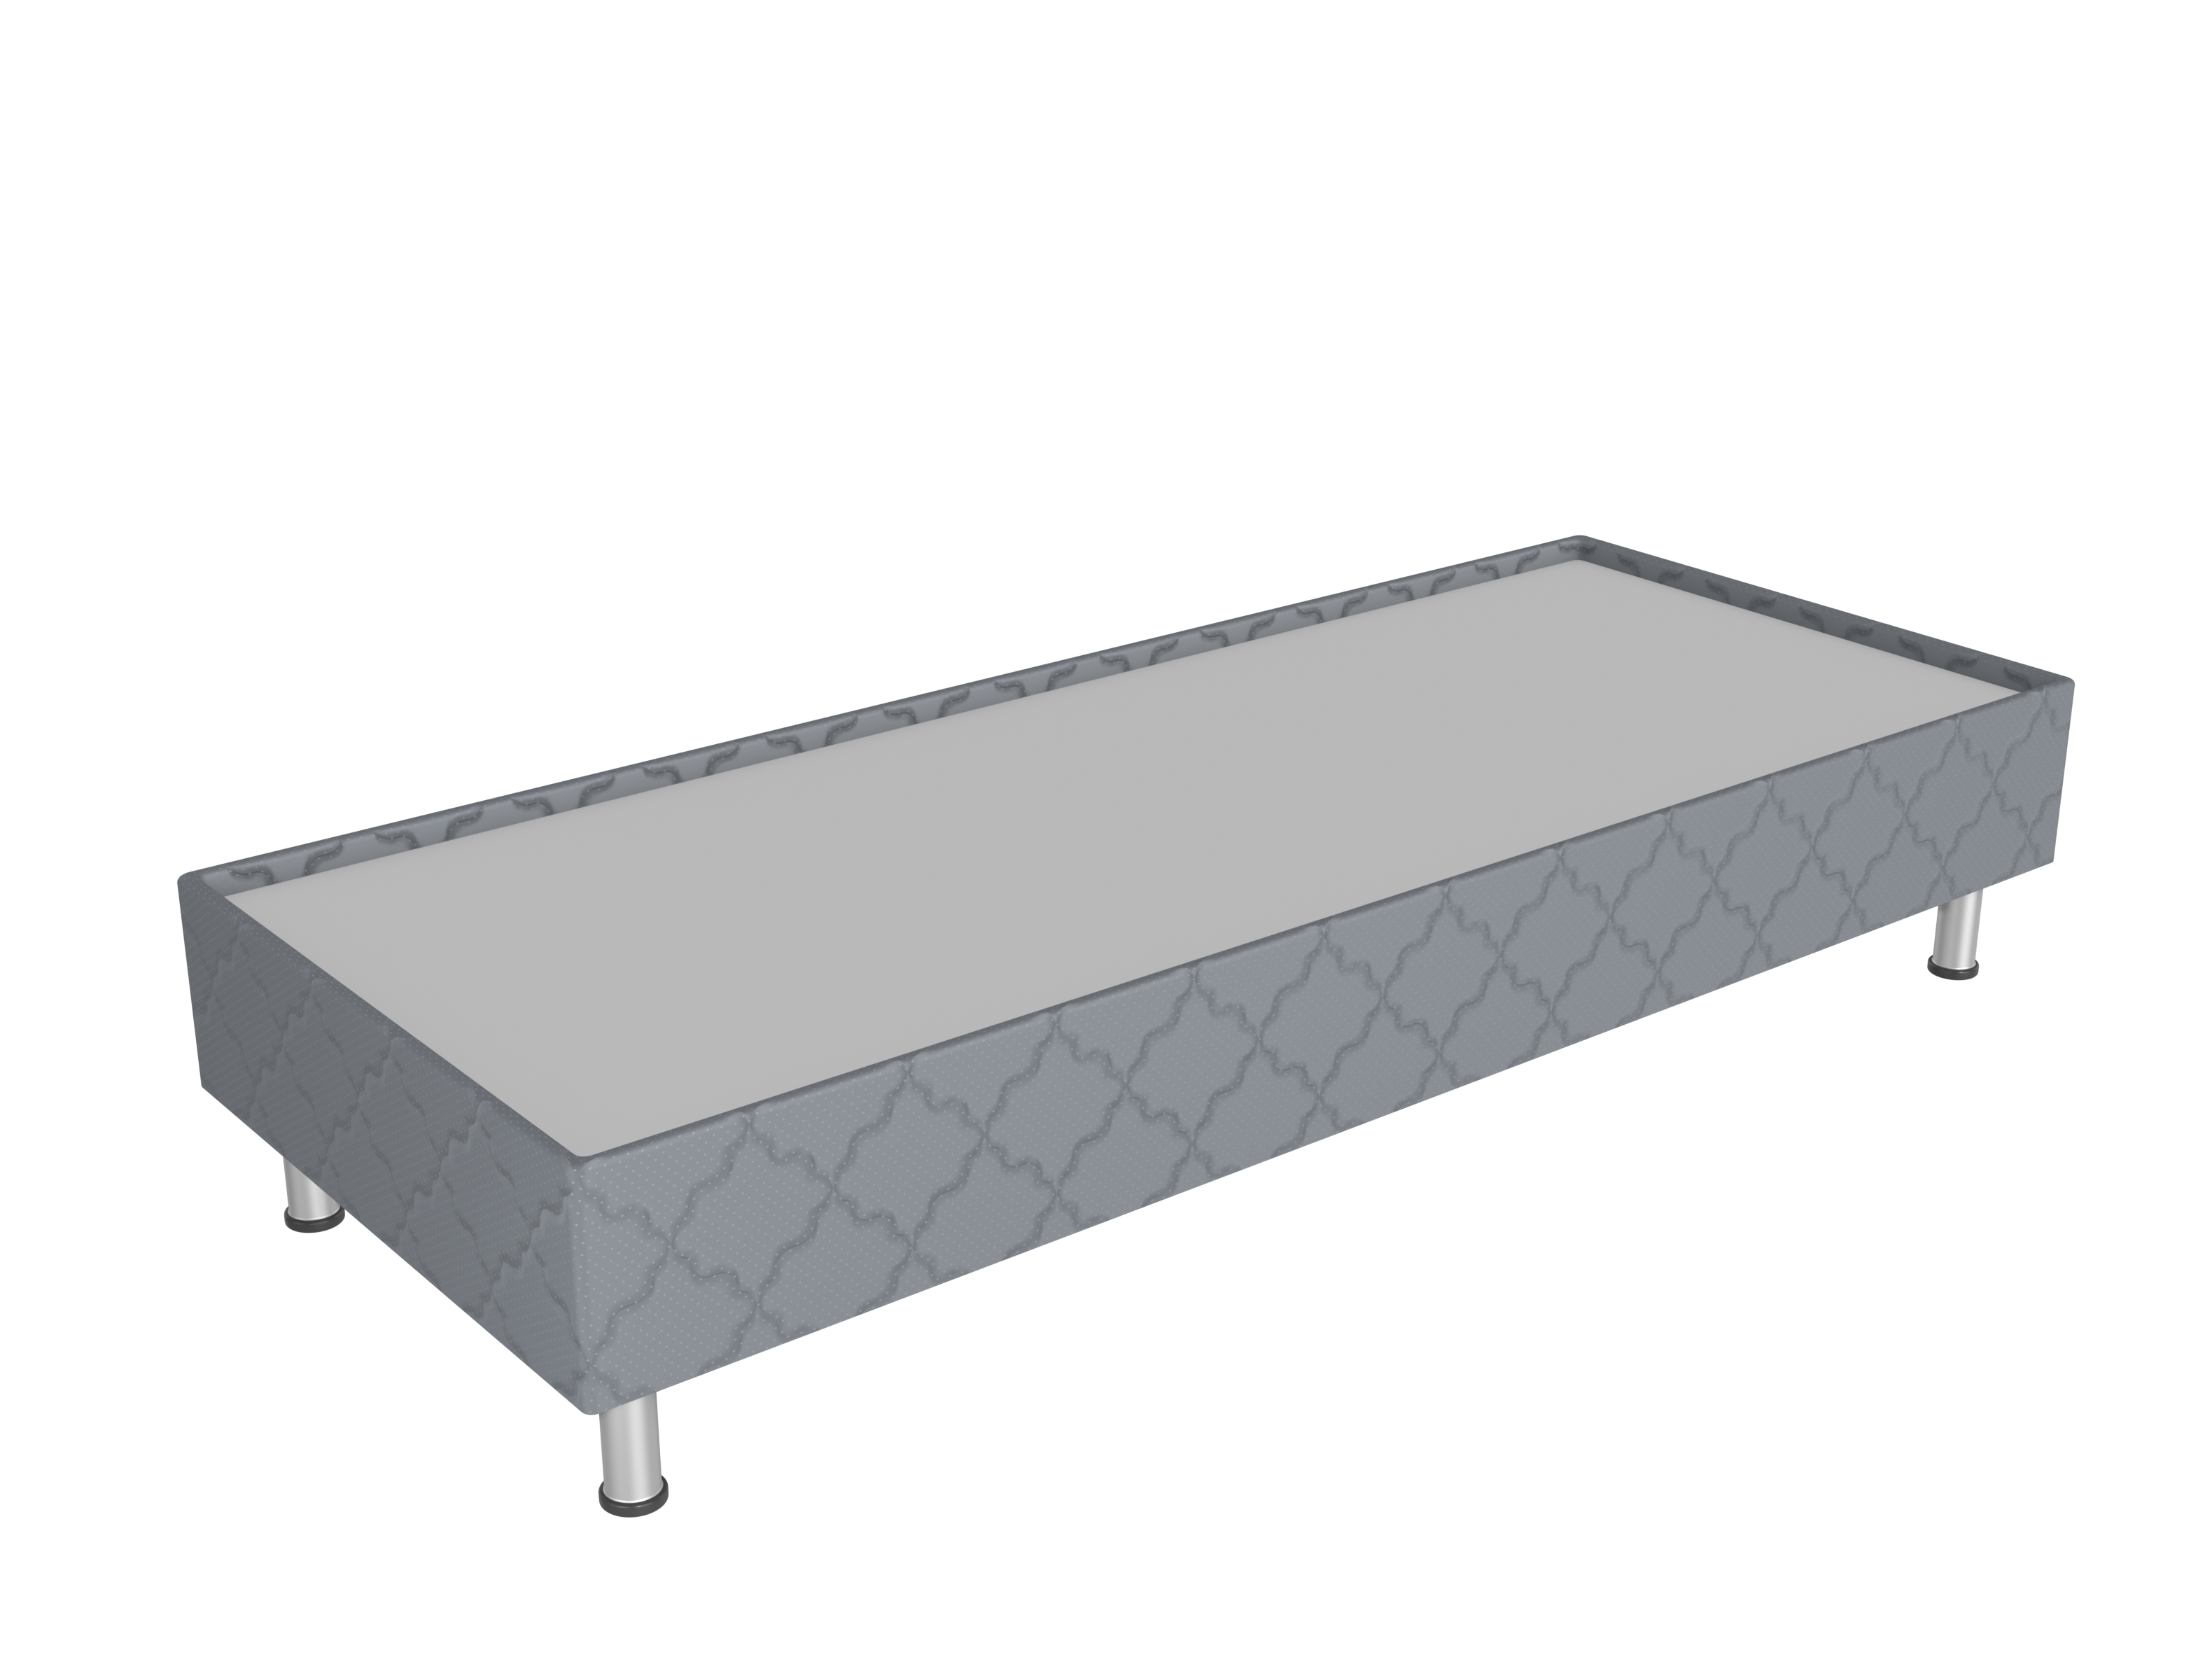 Spring box кровать — СБ-200/90 серый (2000х900х380 мм) основание для гостиницы